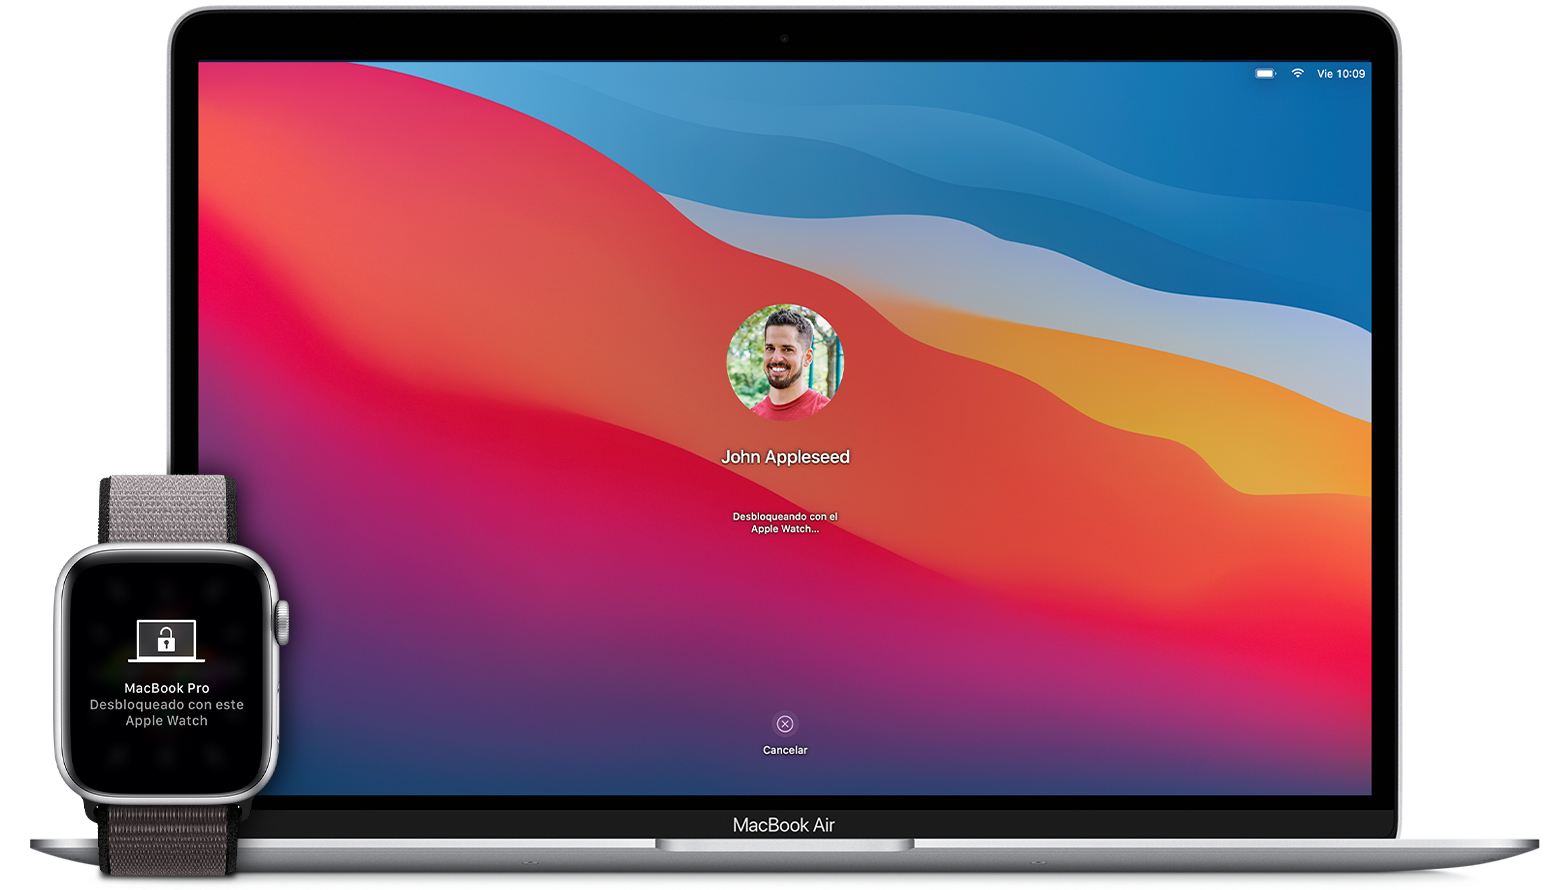 Desbloquear el Mac con el Apple Watch - Soporte técnico de Apple (ES)